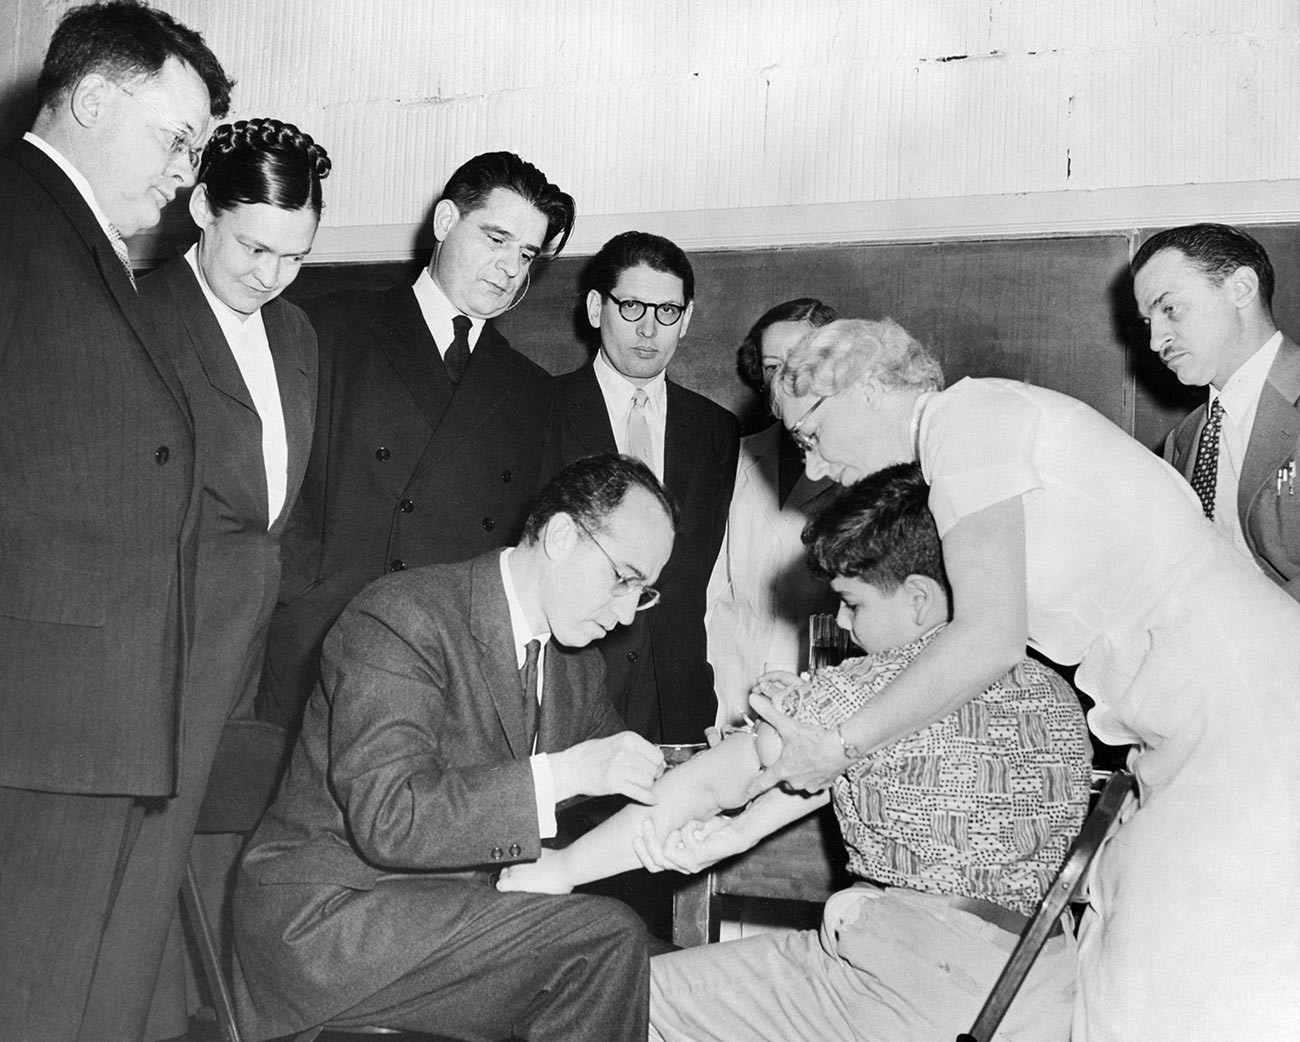 Cientistas russos em visita aos Estados Unidos observam Dr. Jonas Salk administrar injeção de sua vacina antipólio em Paul Anolik, de 9 anos
